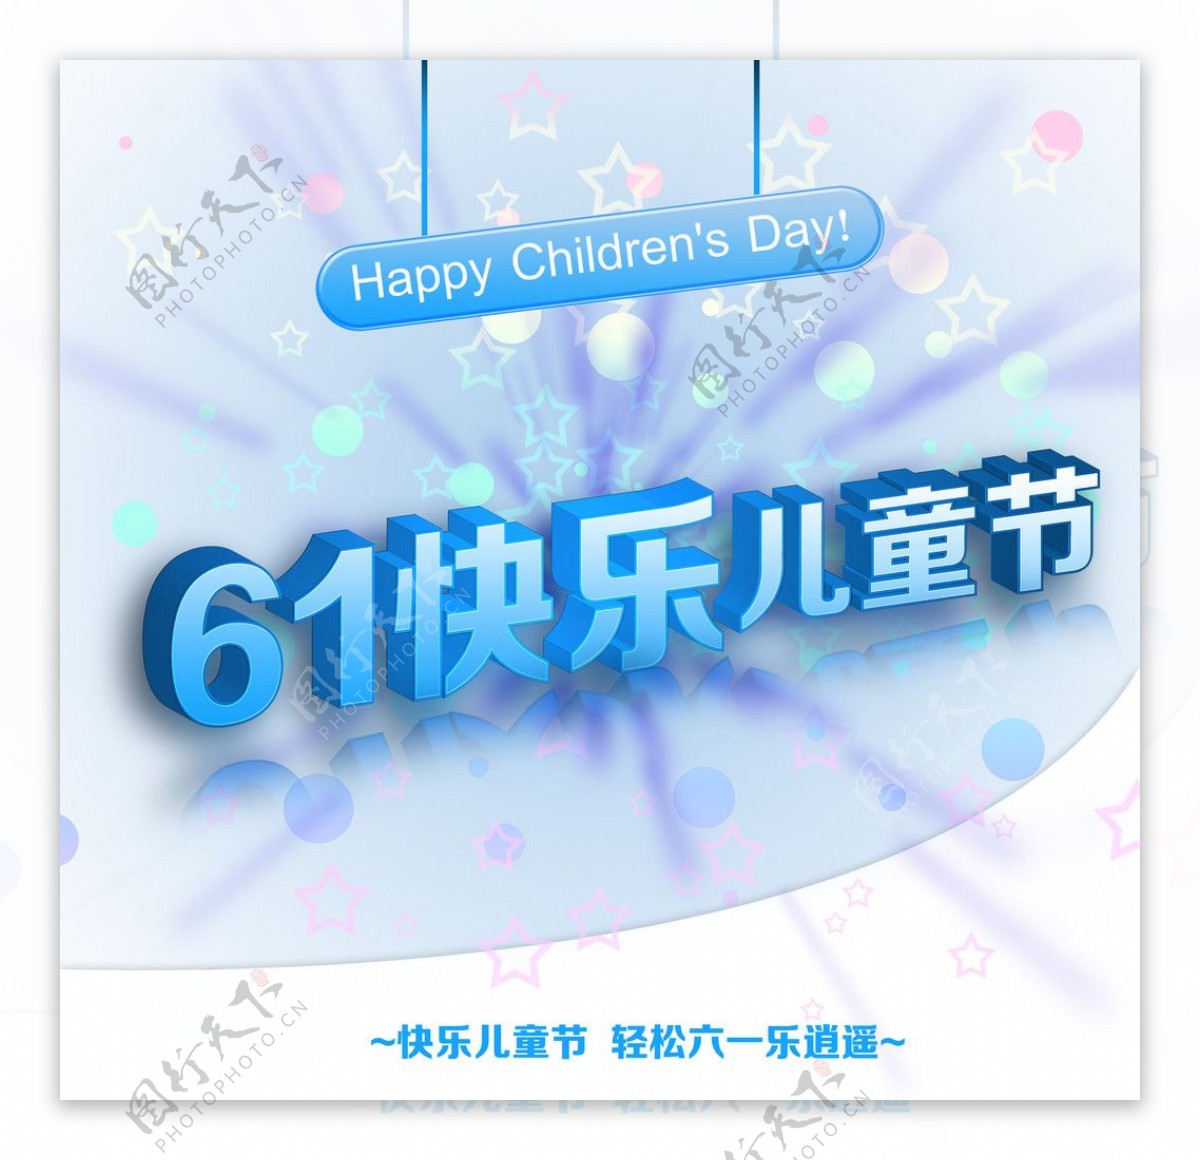 61快乐儿童节吊旗图片